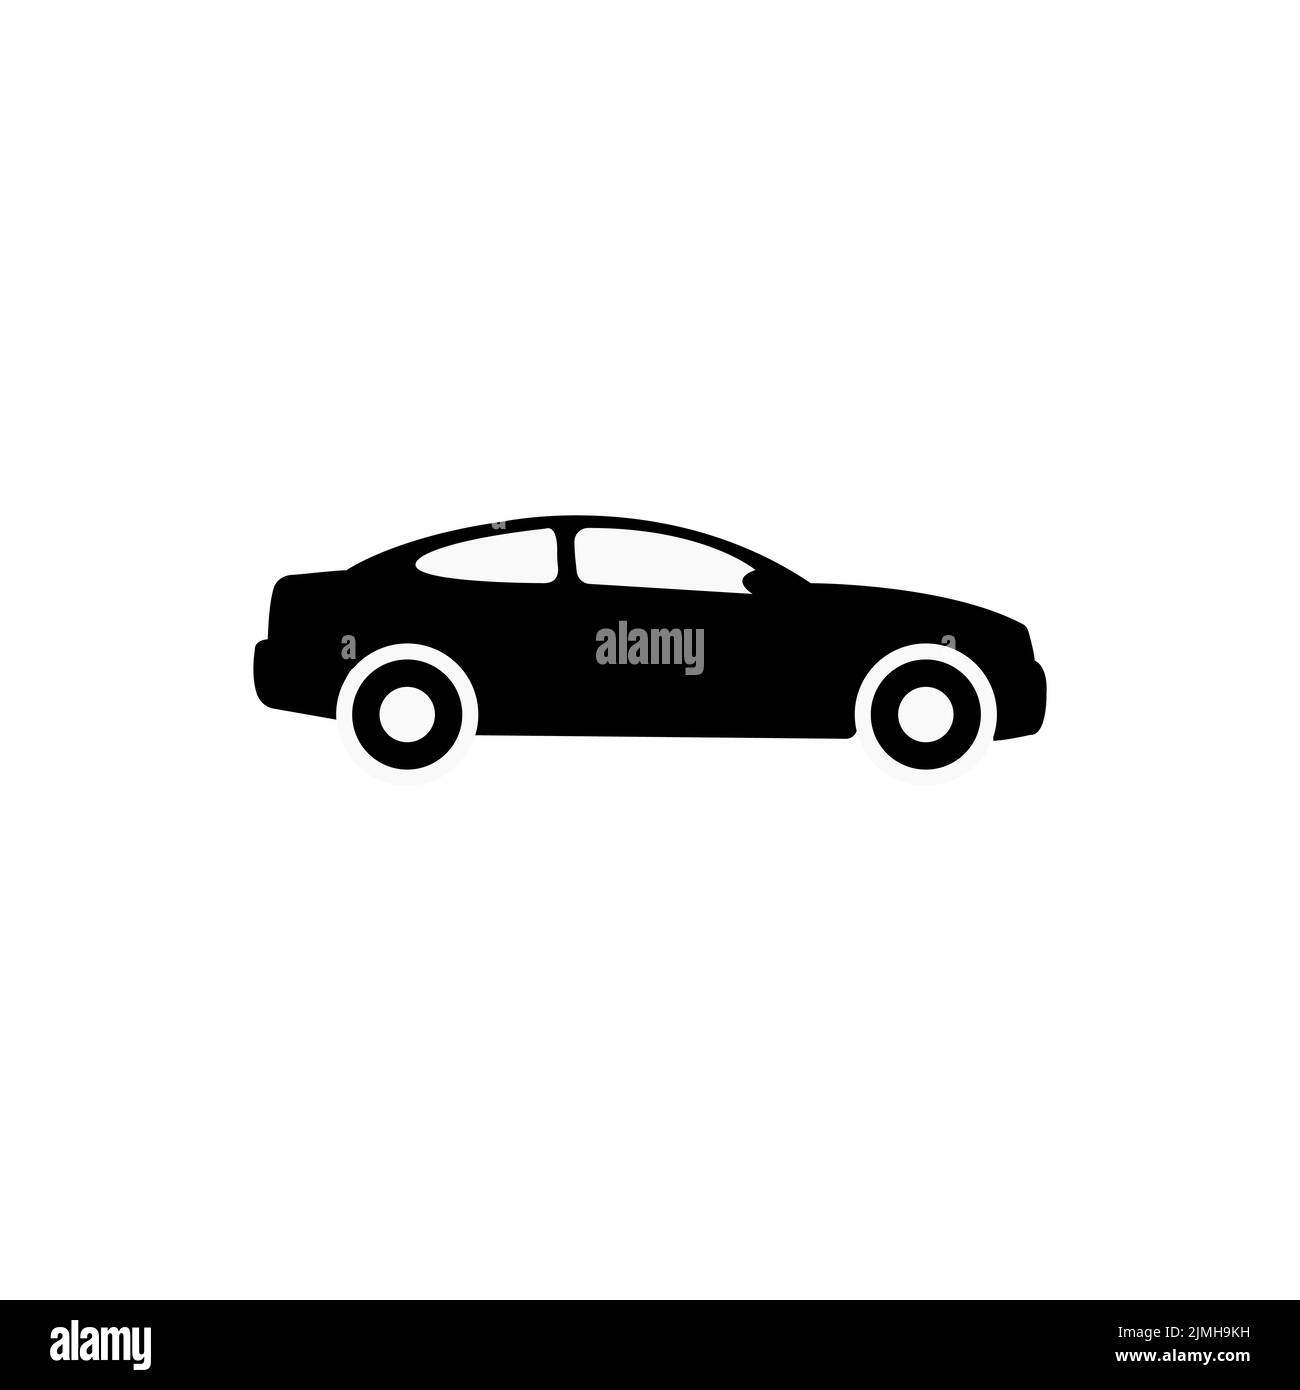 Coche. Icono monocromo. Ilustración de icono de coche. Simple símbolo gris plano sobre fondo blanco con sombra Ilustración del Vector